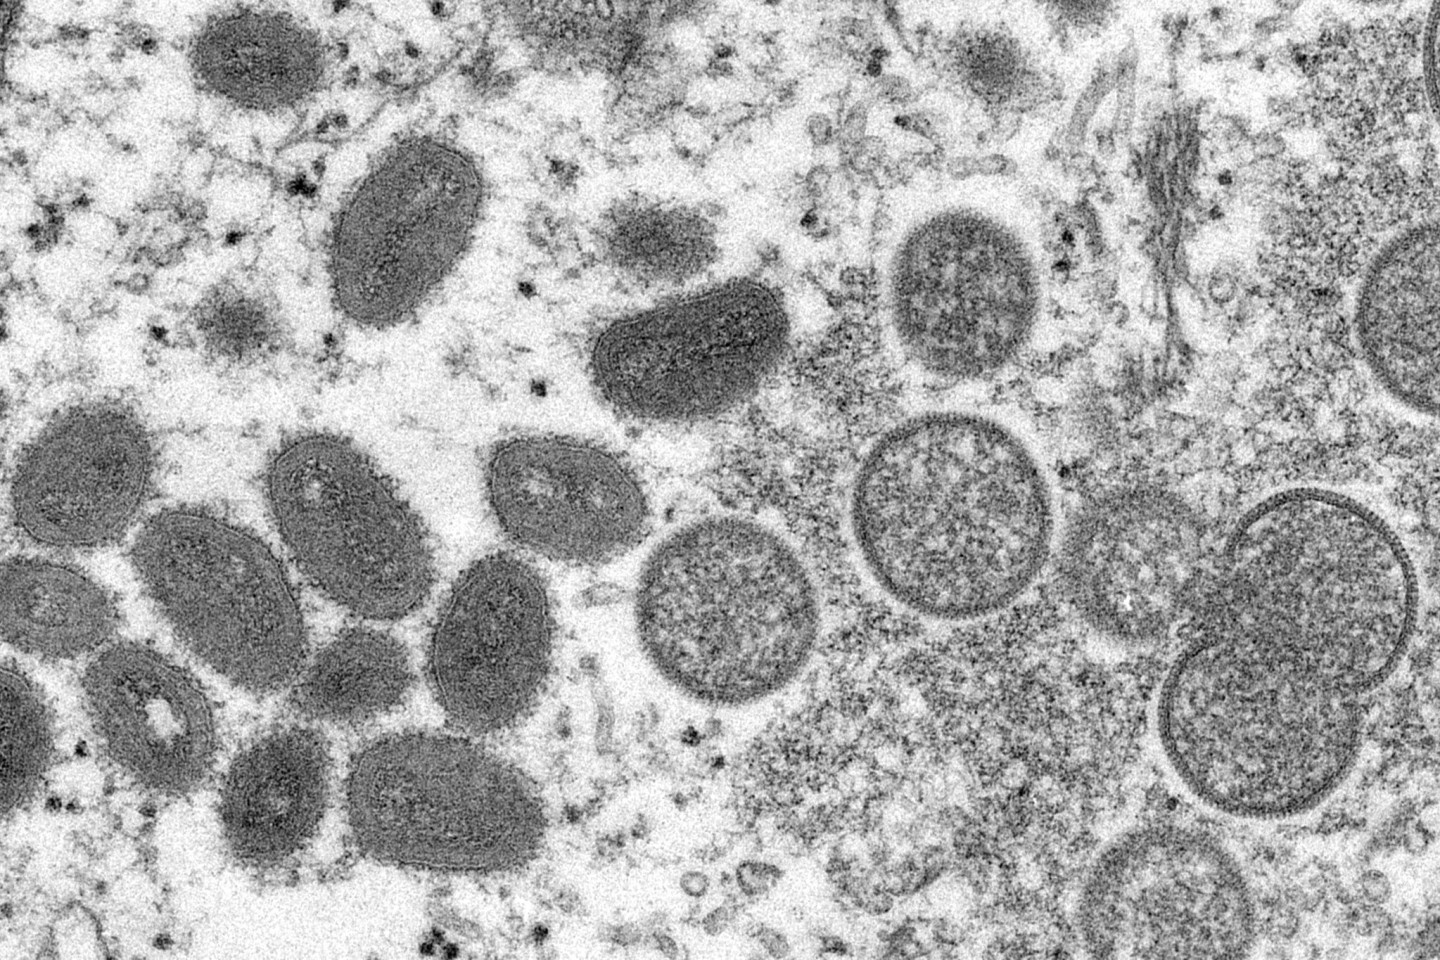 Diese elektronenmikroskopische Aufnahme zeigt reife, ovale Affenpockenviren (l) und kugelförmige unreife Virionen (r), die aus einer menschlichen Hautprobe stammen.